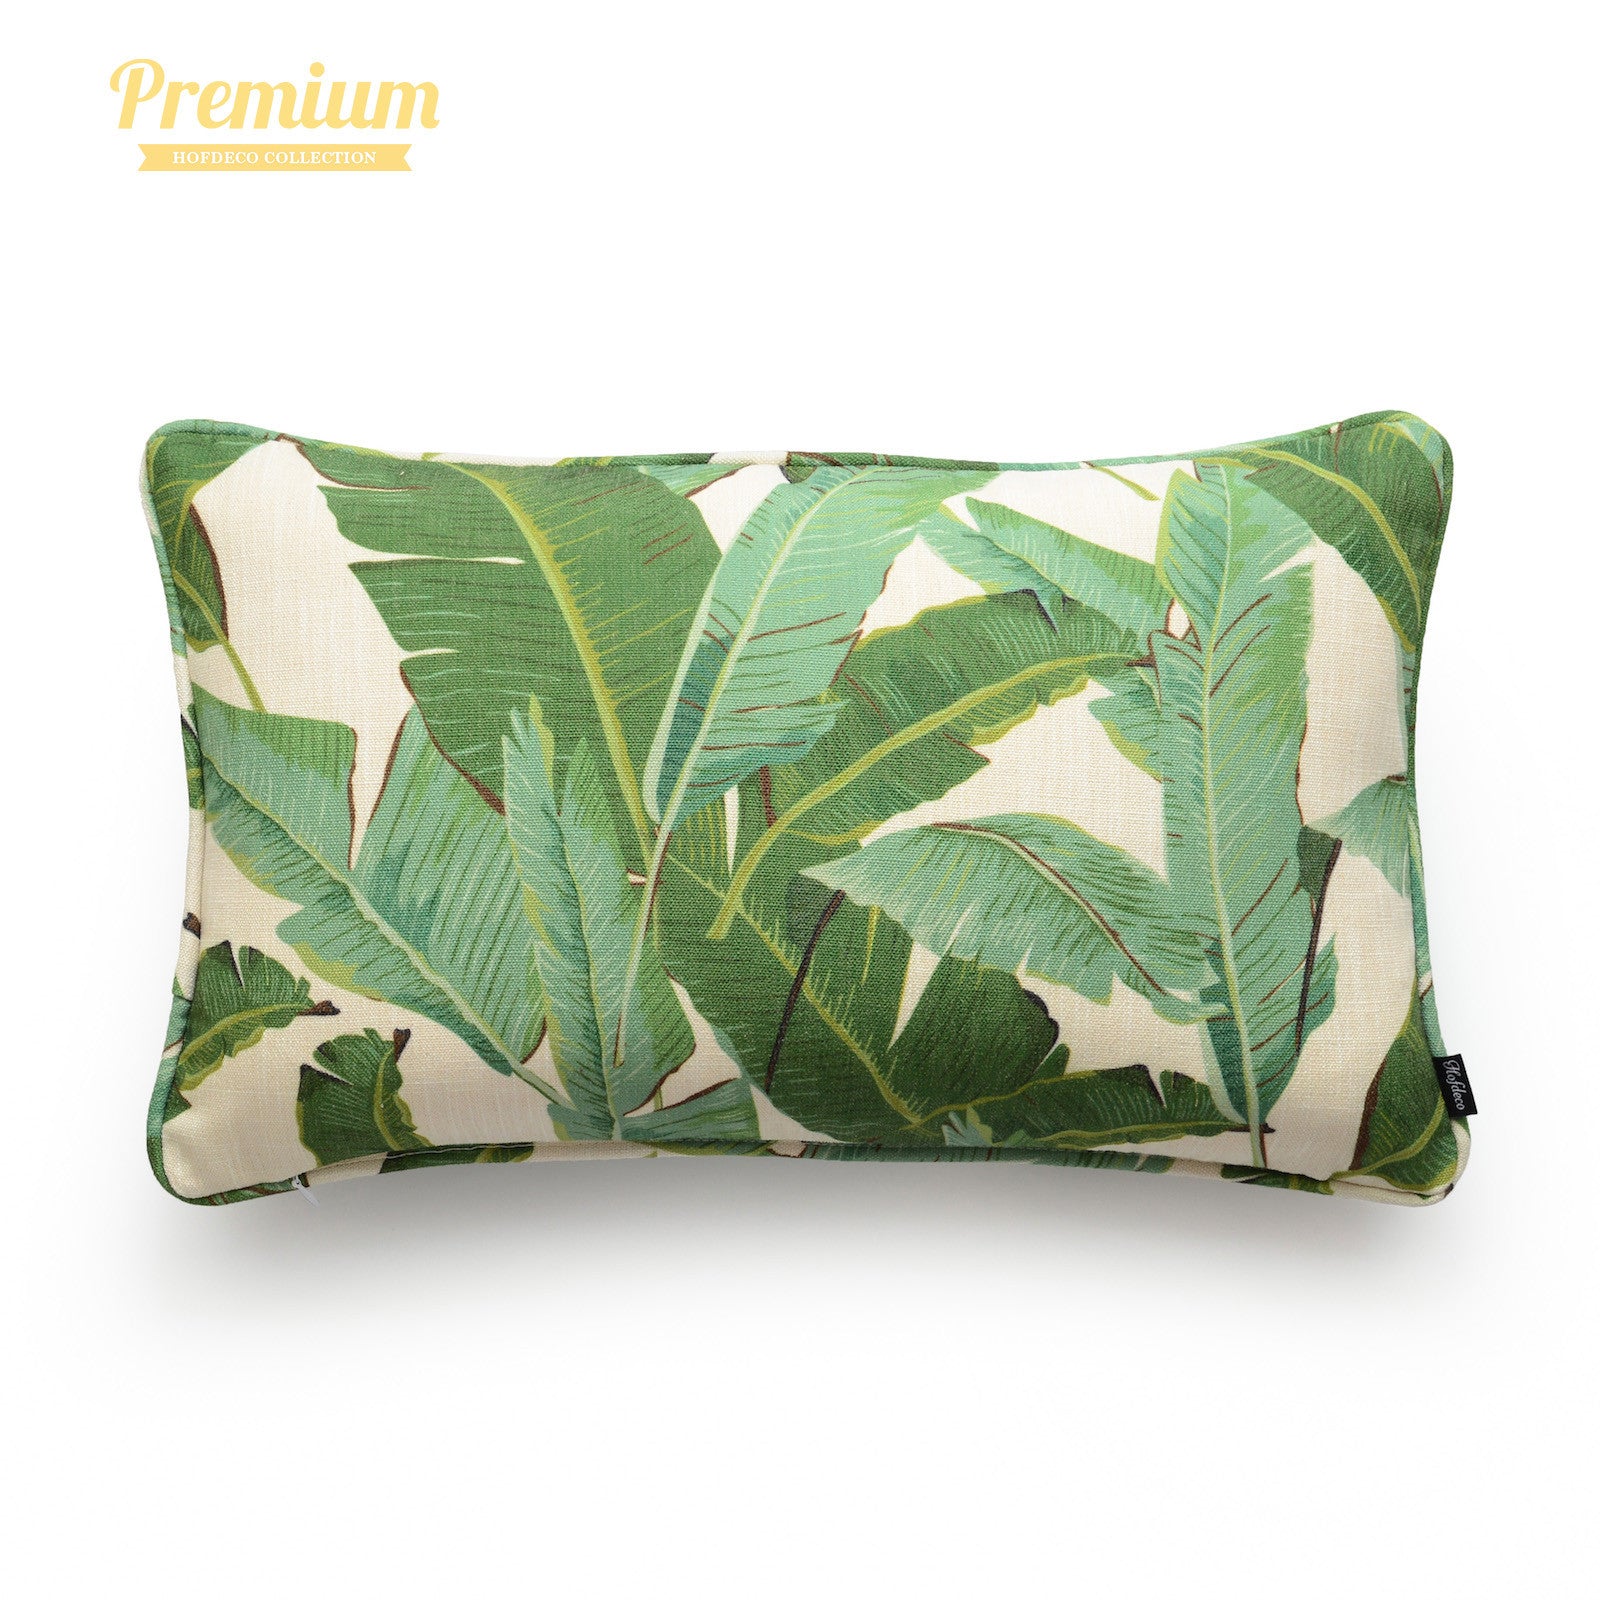 Tropical Banana Leaf Lumbar Pillow Cover, 12"x20"